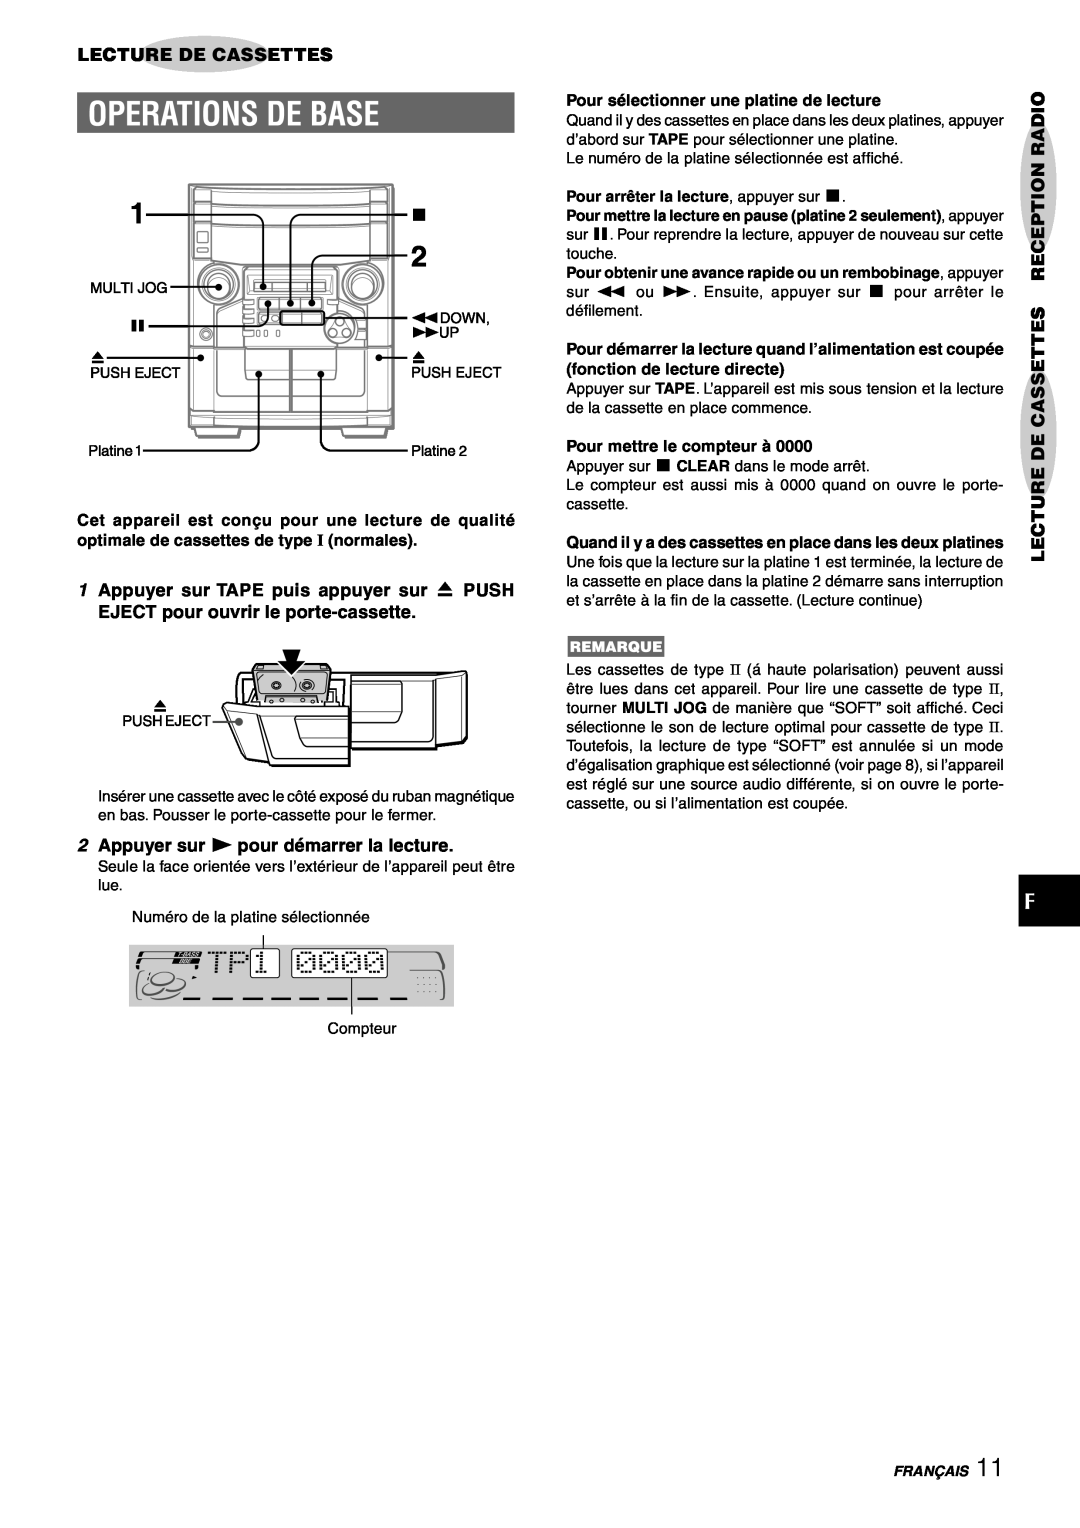 Aiwa CX-NAJ54 manual Operations De Base, Lecture De Cassettes, 1Appuyer sur TAPE puis appuyer sur z PUSH 